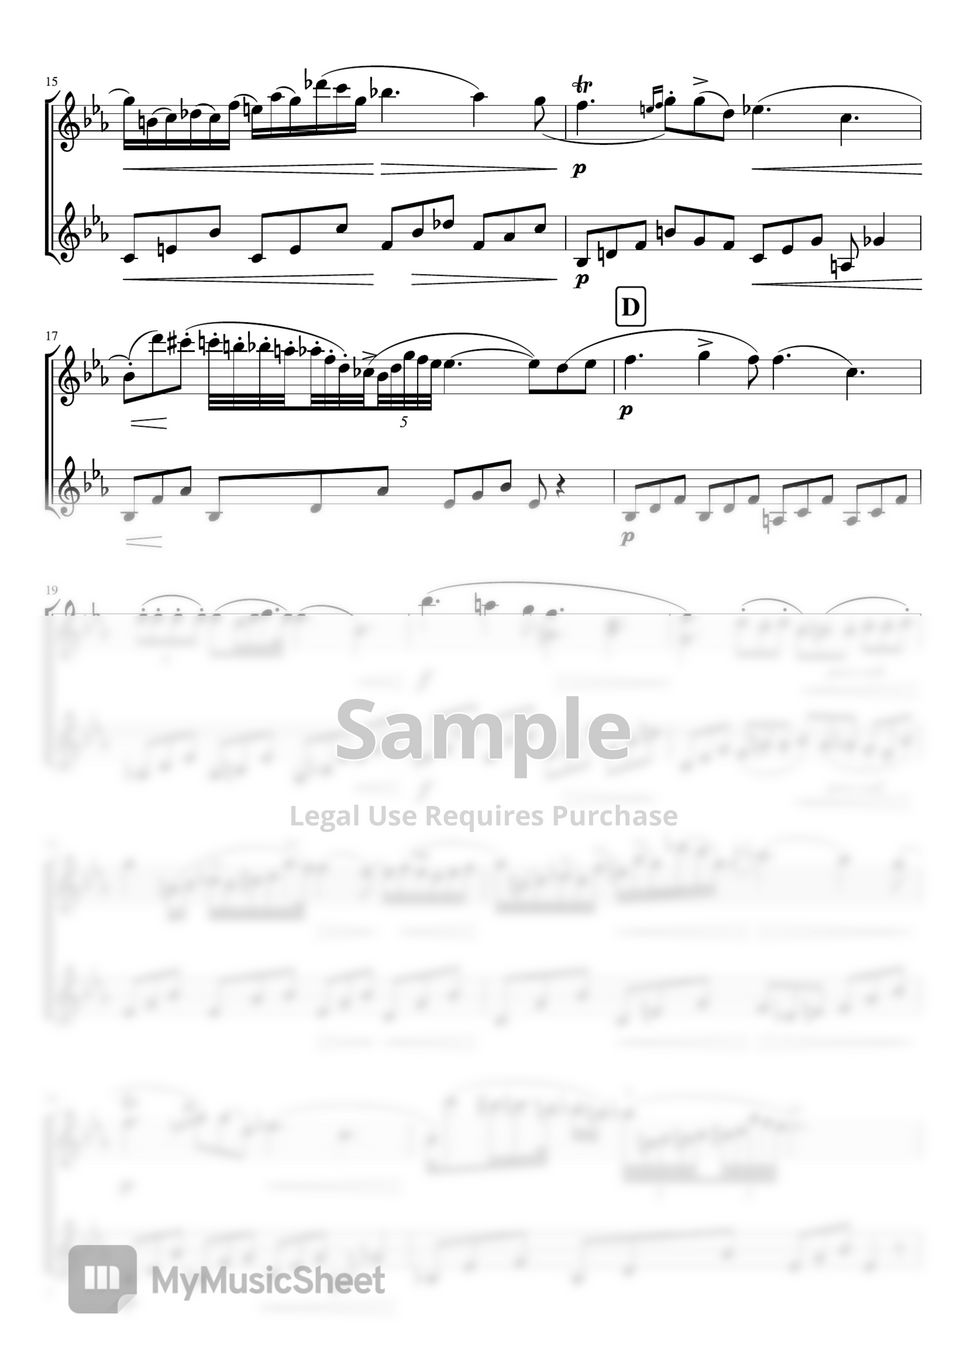 Chopin - Nocturne op.9-2 (Violin duet non accompaniment) by pfkaori